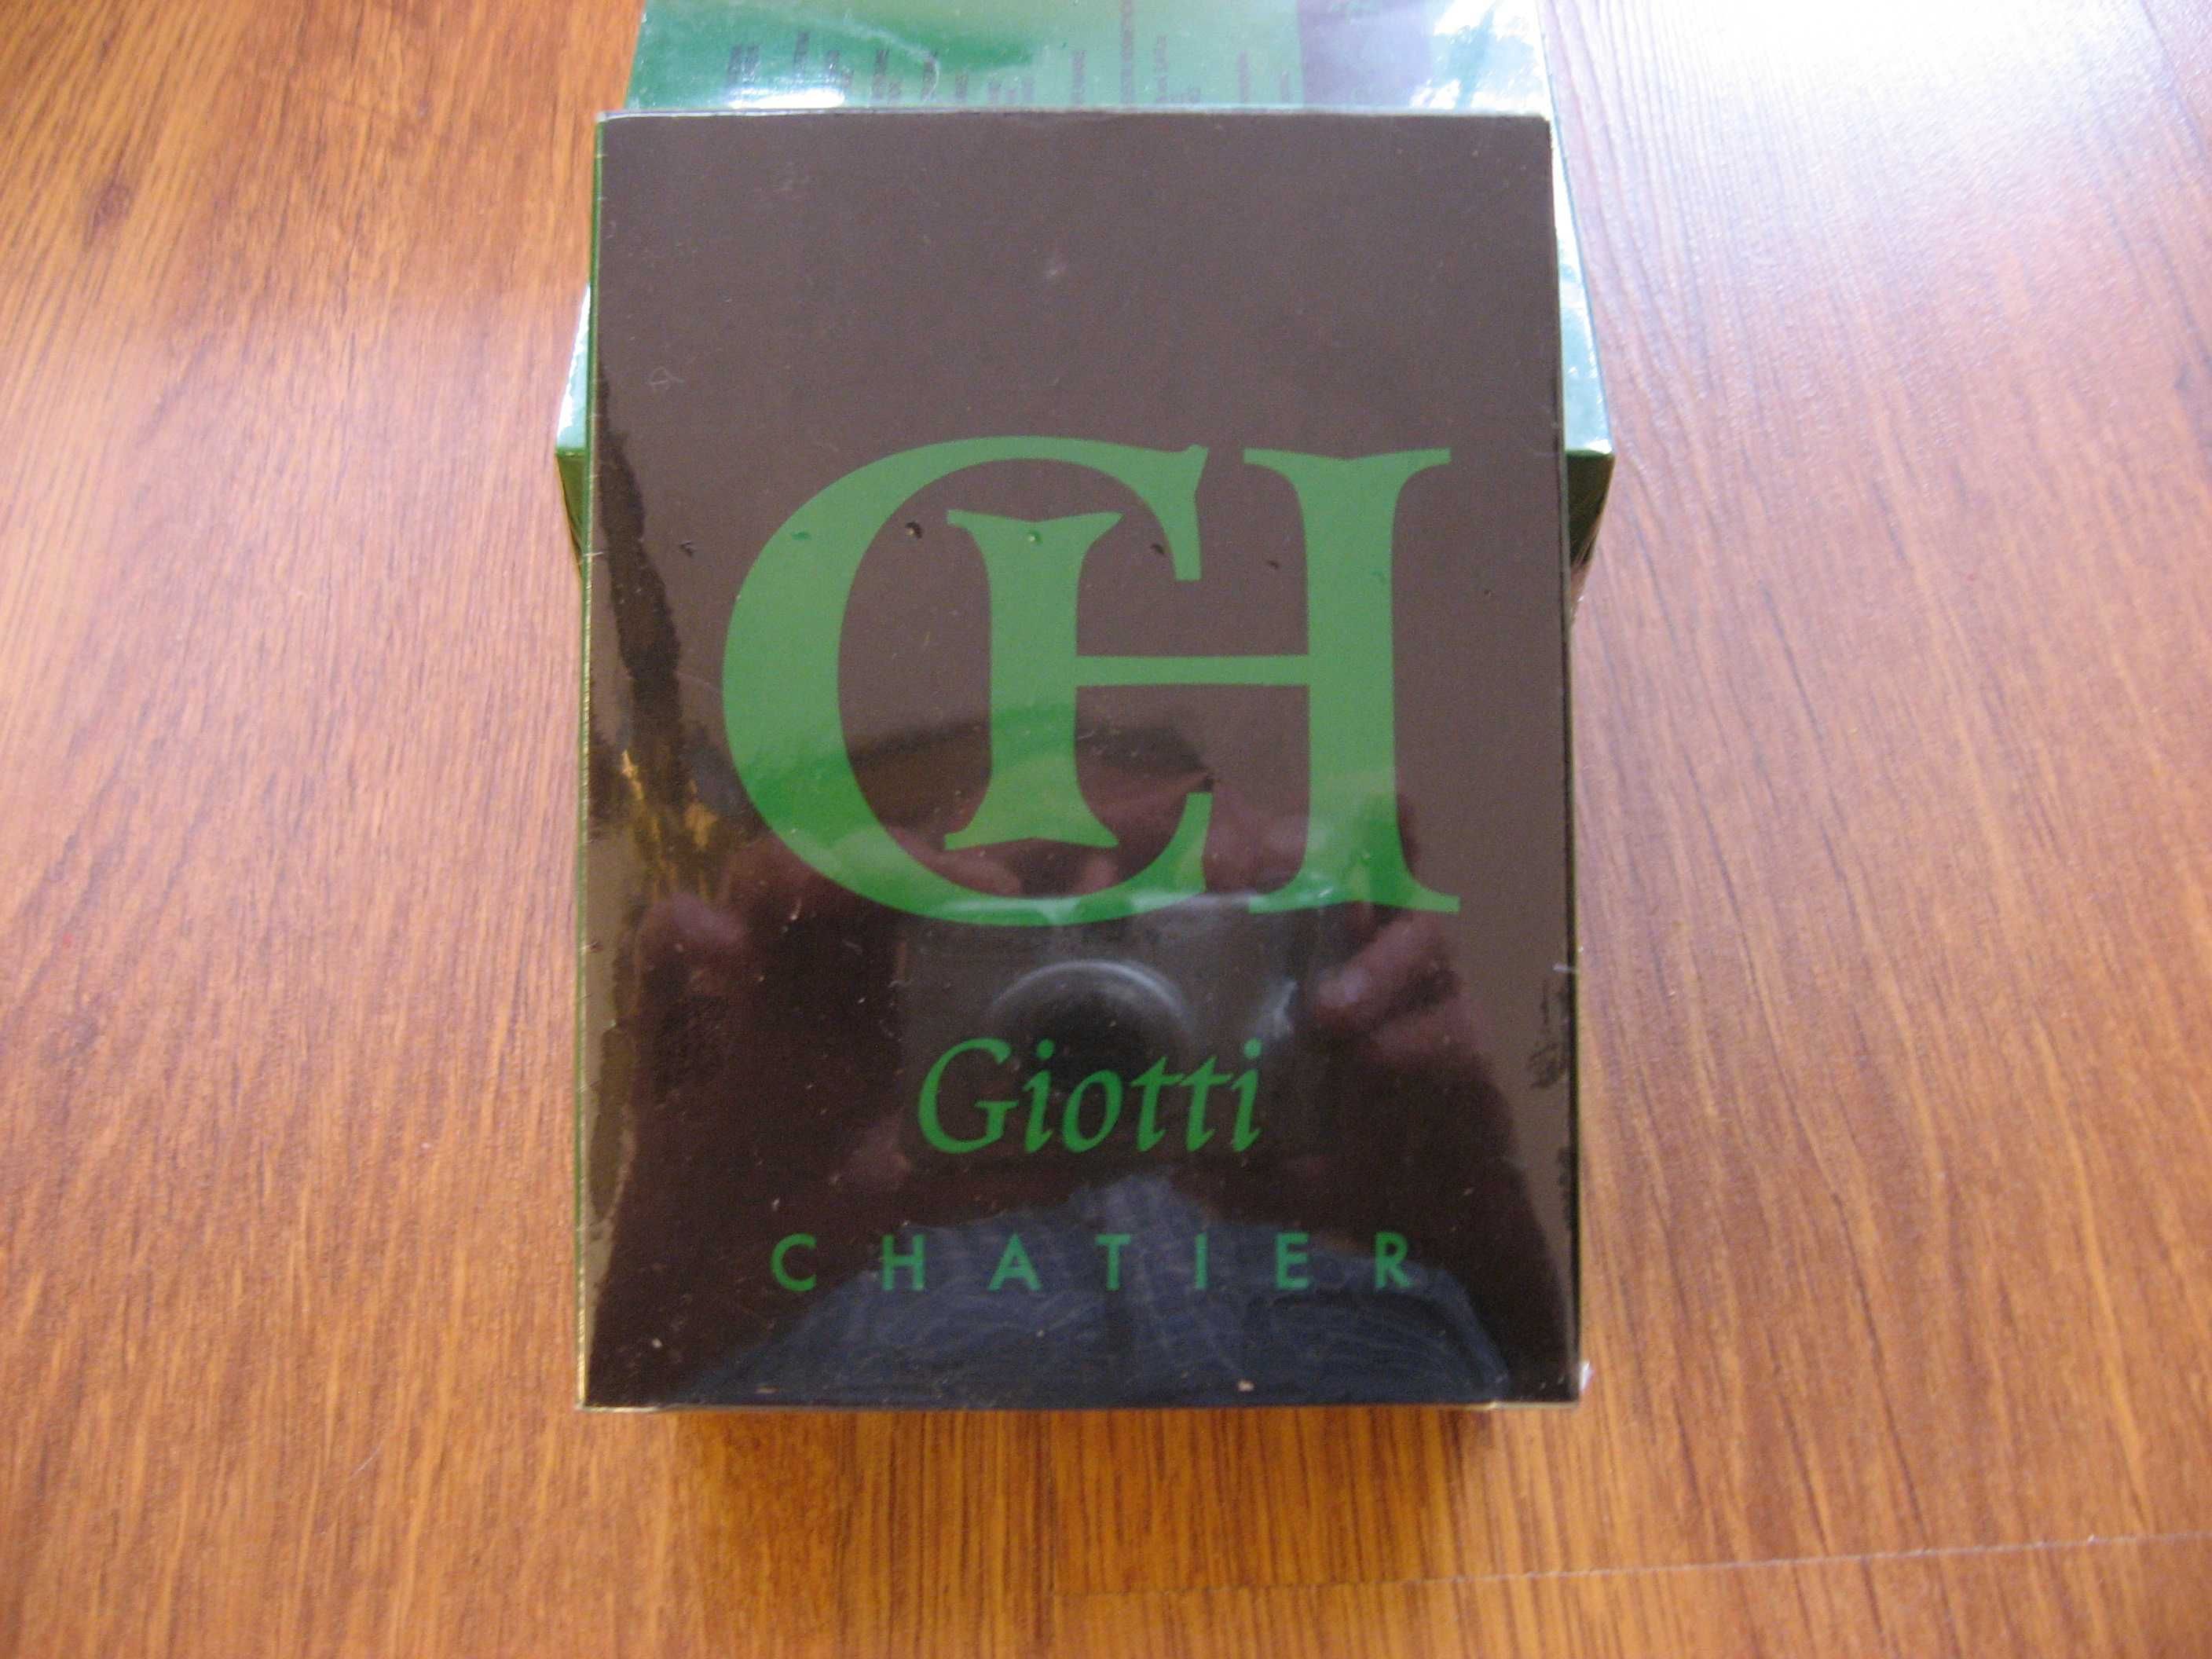 Woda męska CH-Giotti - Chatier